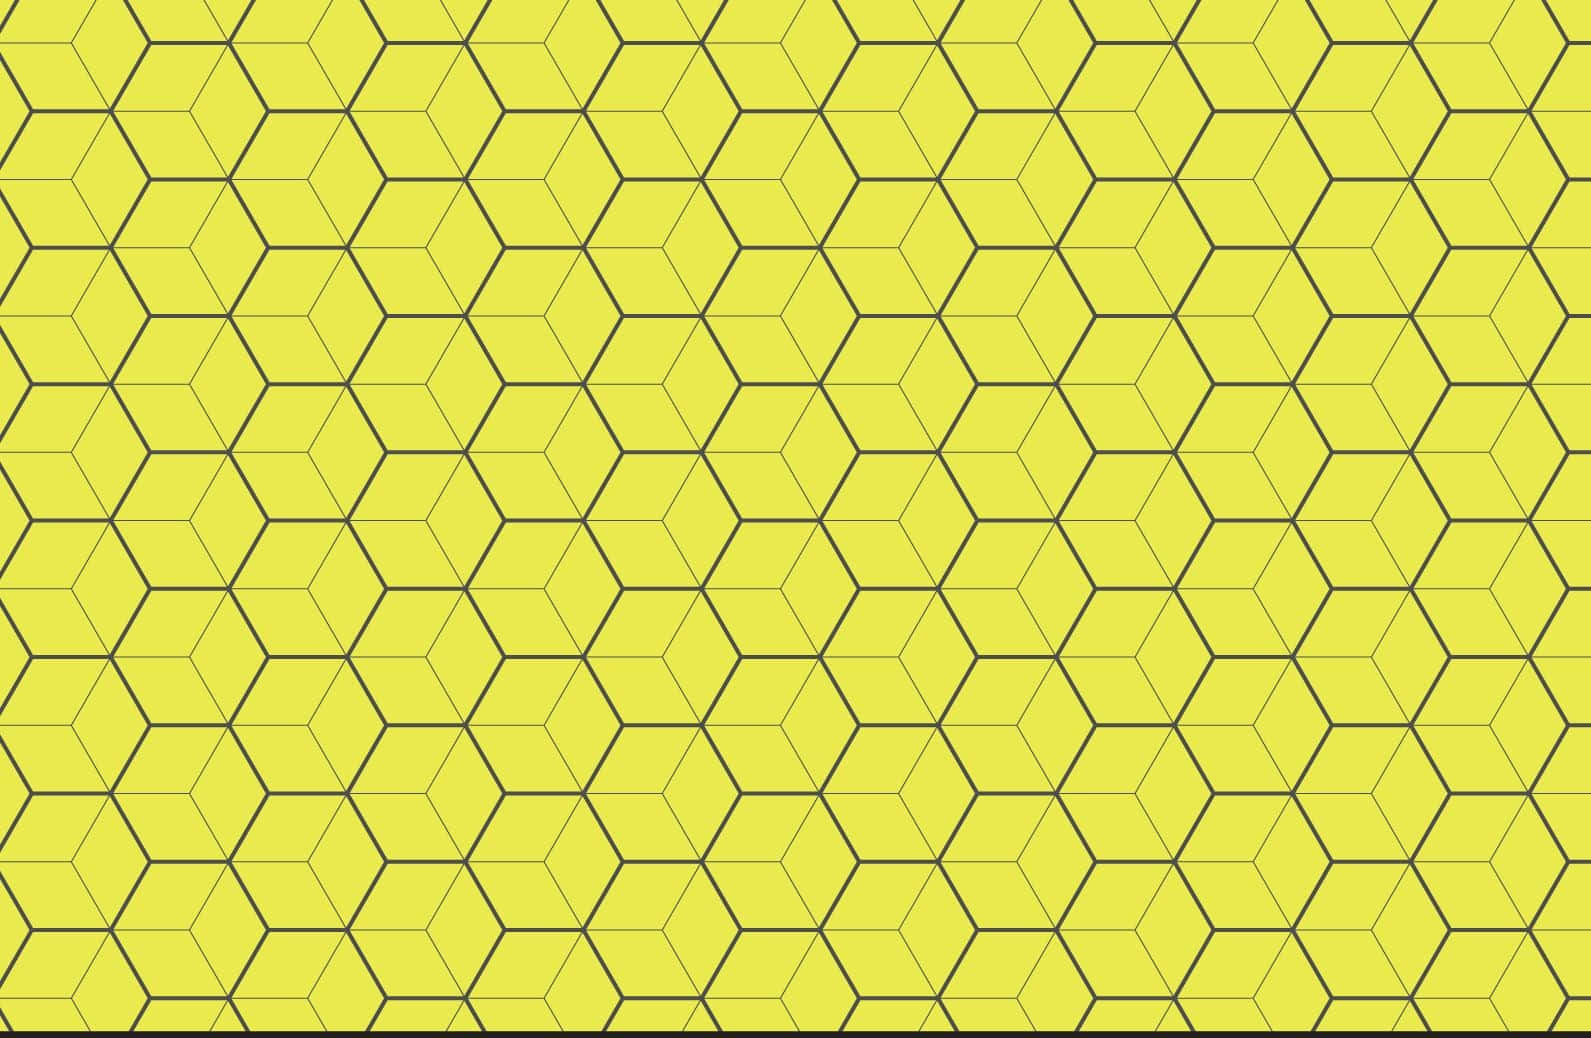 Patrónde Estética Amarillo En Forma De Panal De Abeja Hexagonal